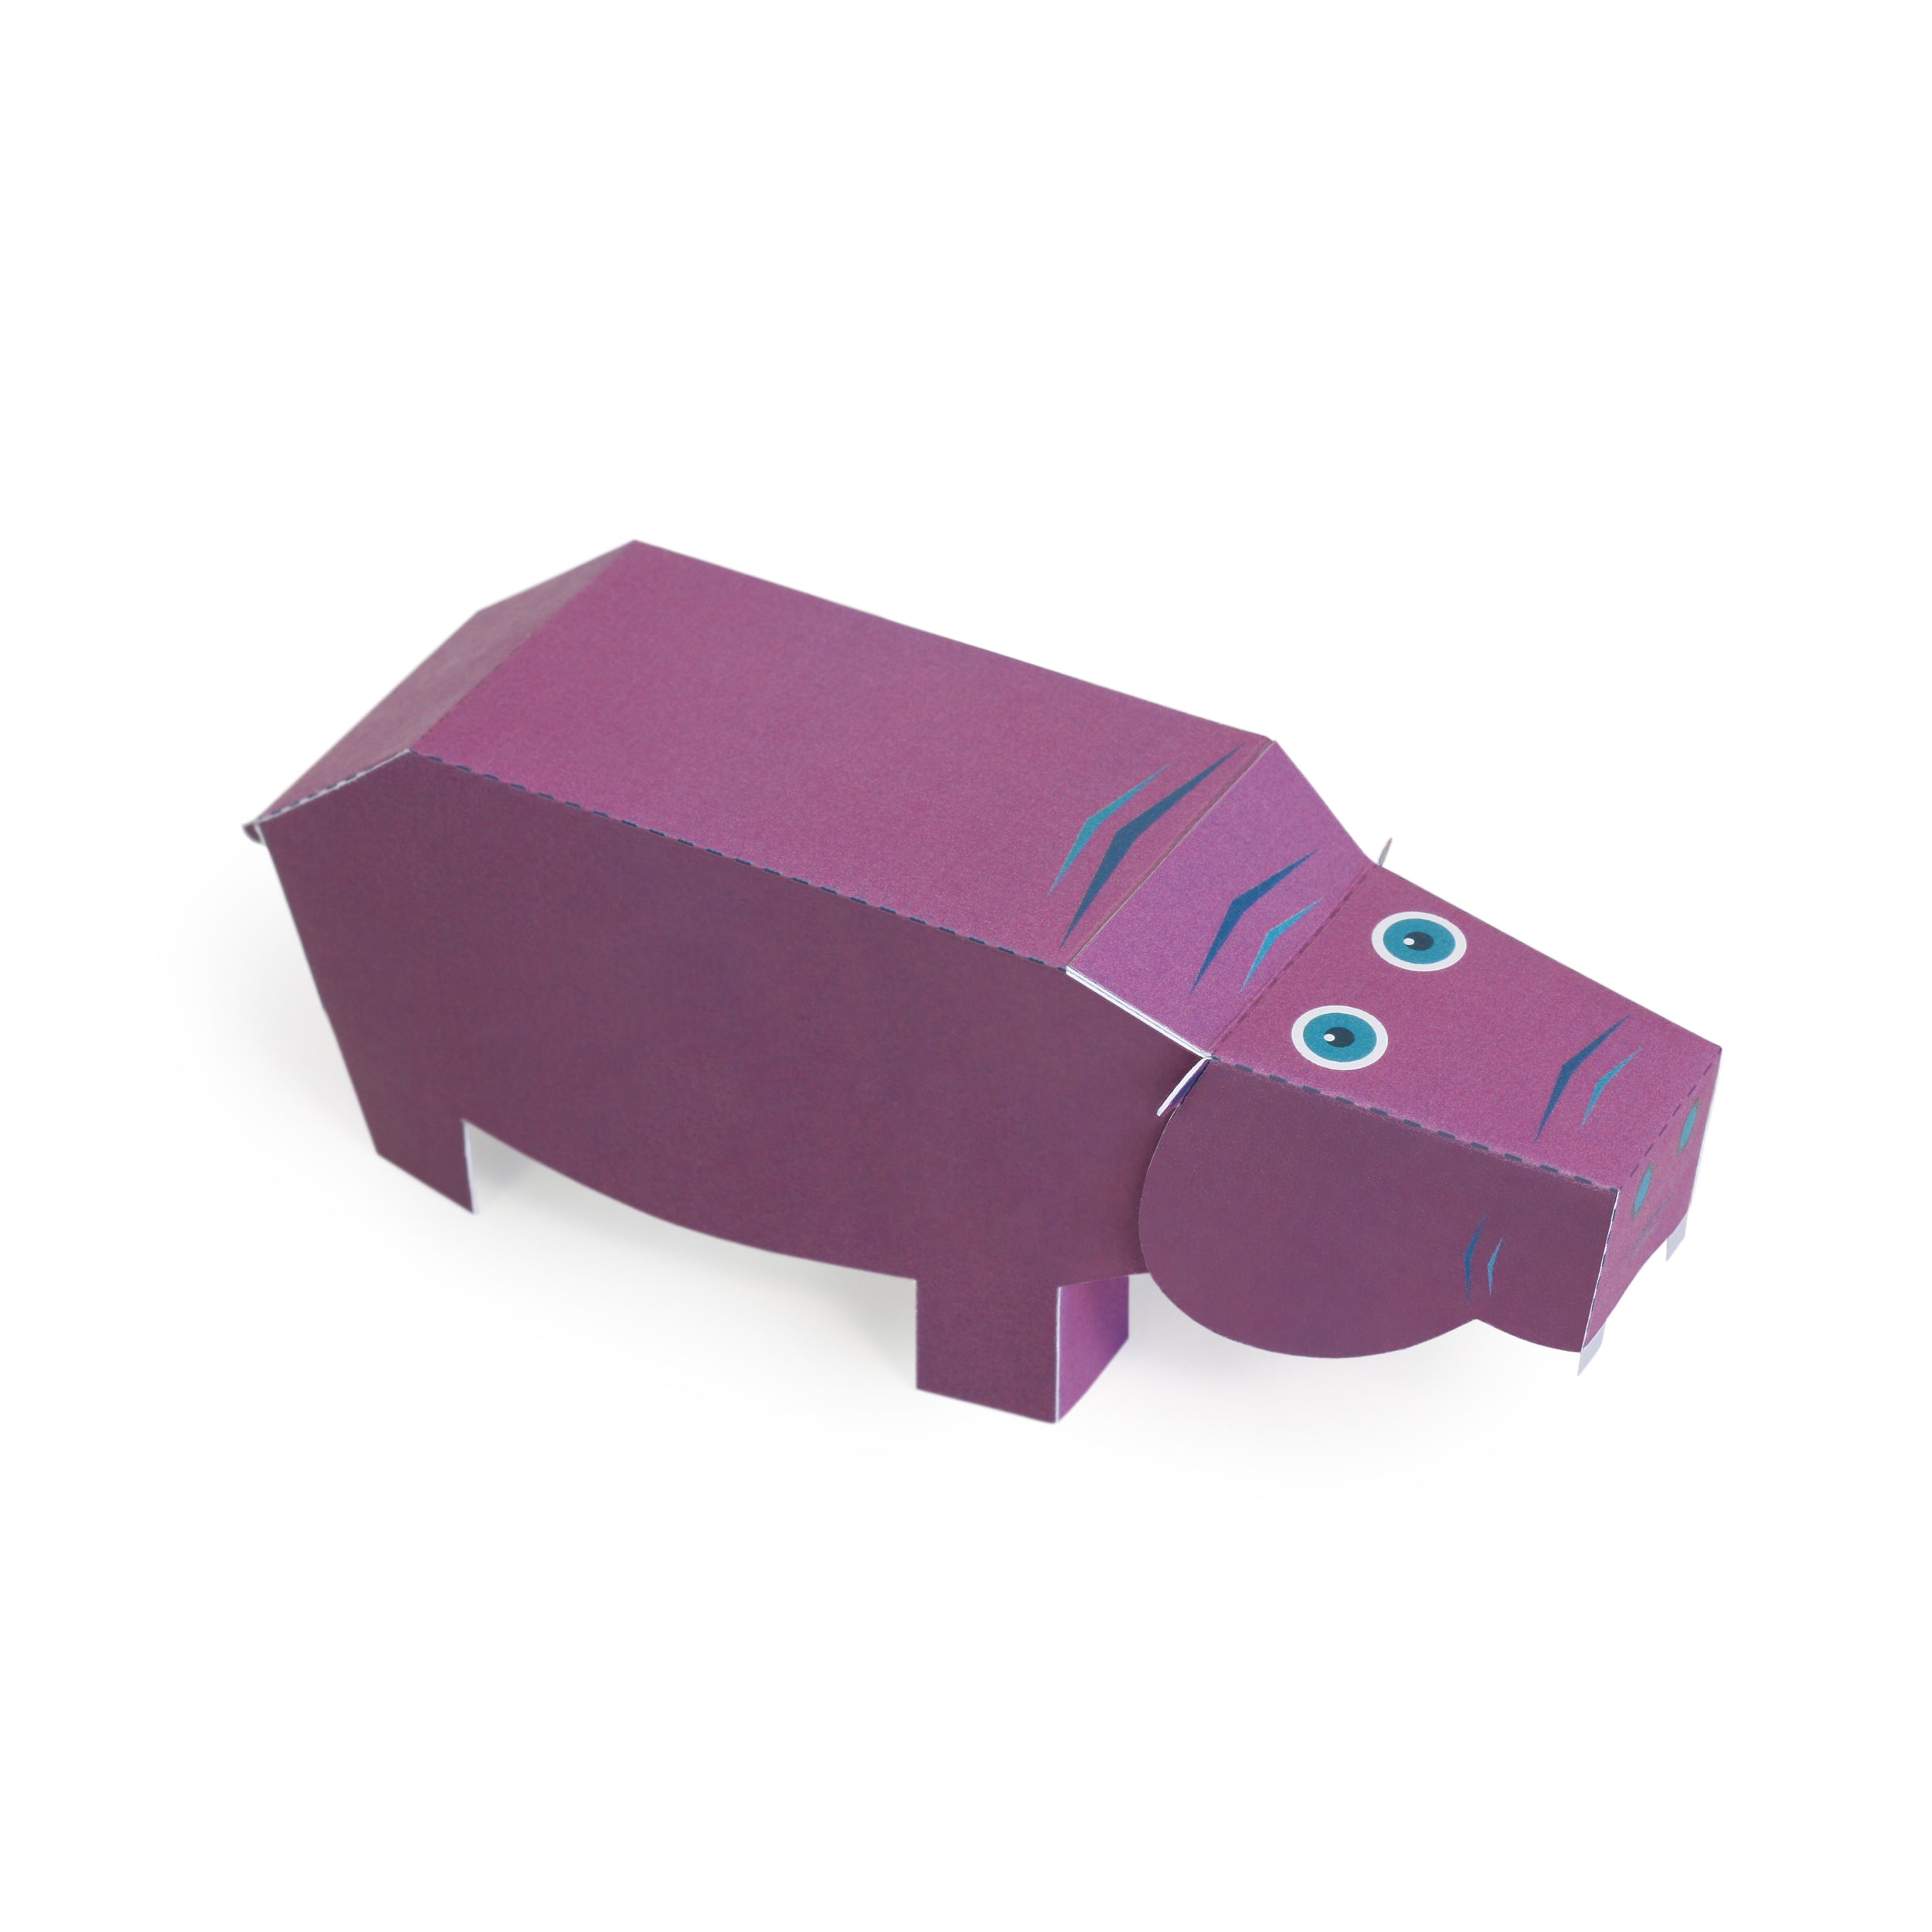 Ζώα της Σαβάνας - Paper Toy